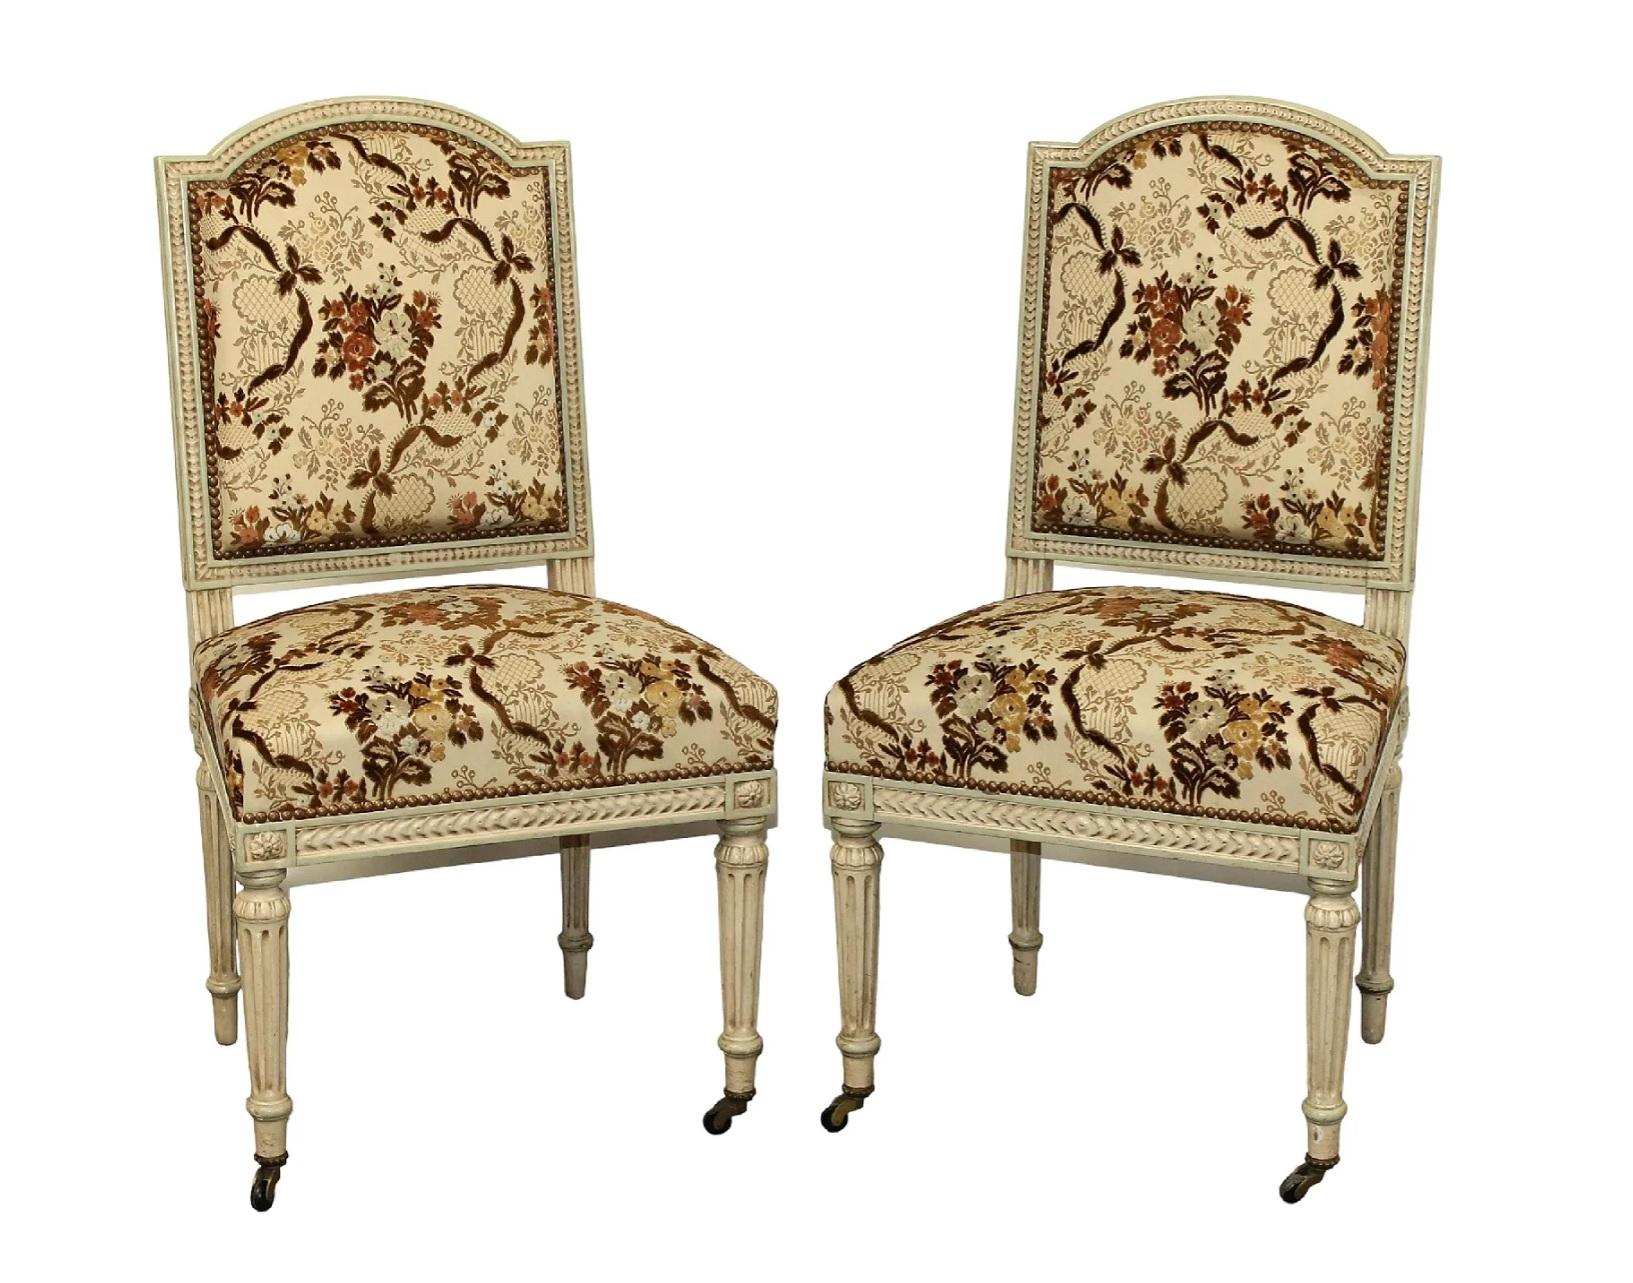 Paire de chaises d'appoint peintes de style Louis XVI sur pieds cannelés. Les sièges et les dossiers sont recouverts d'un tissu floral brun/tan/crème avec des détails en velours découpé, en très bon état. Des têtes de clous en laiton bordent le